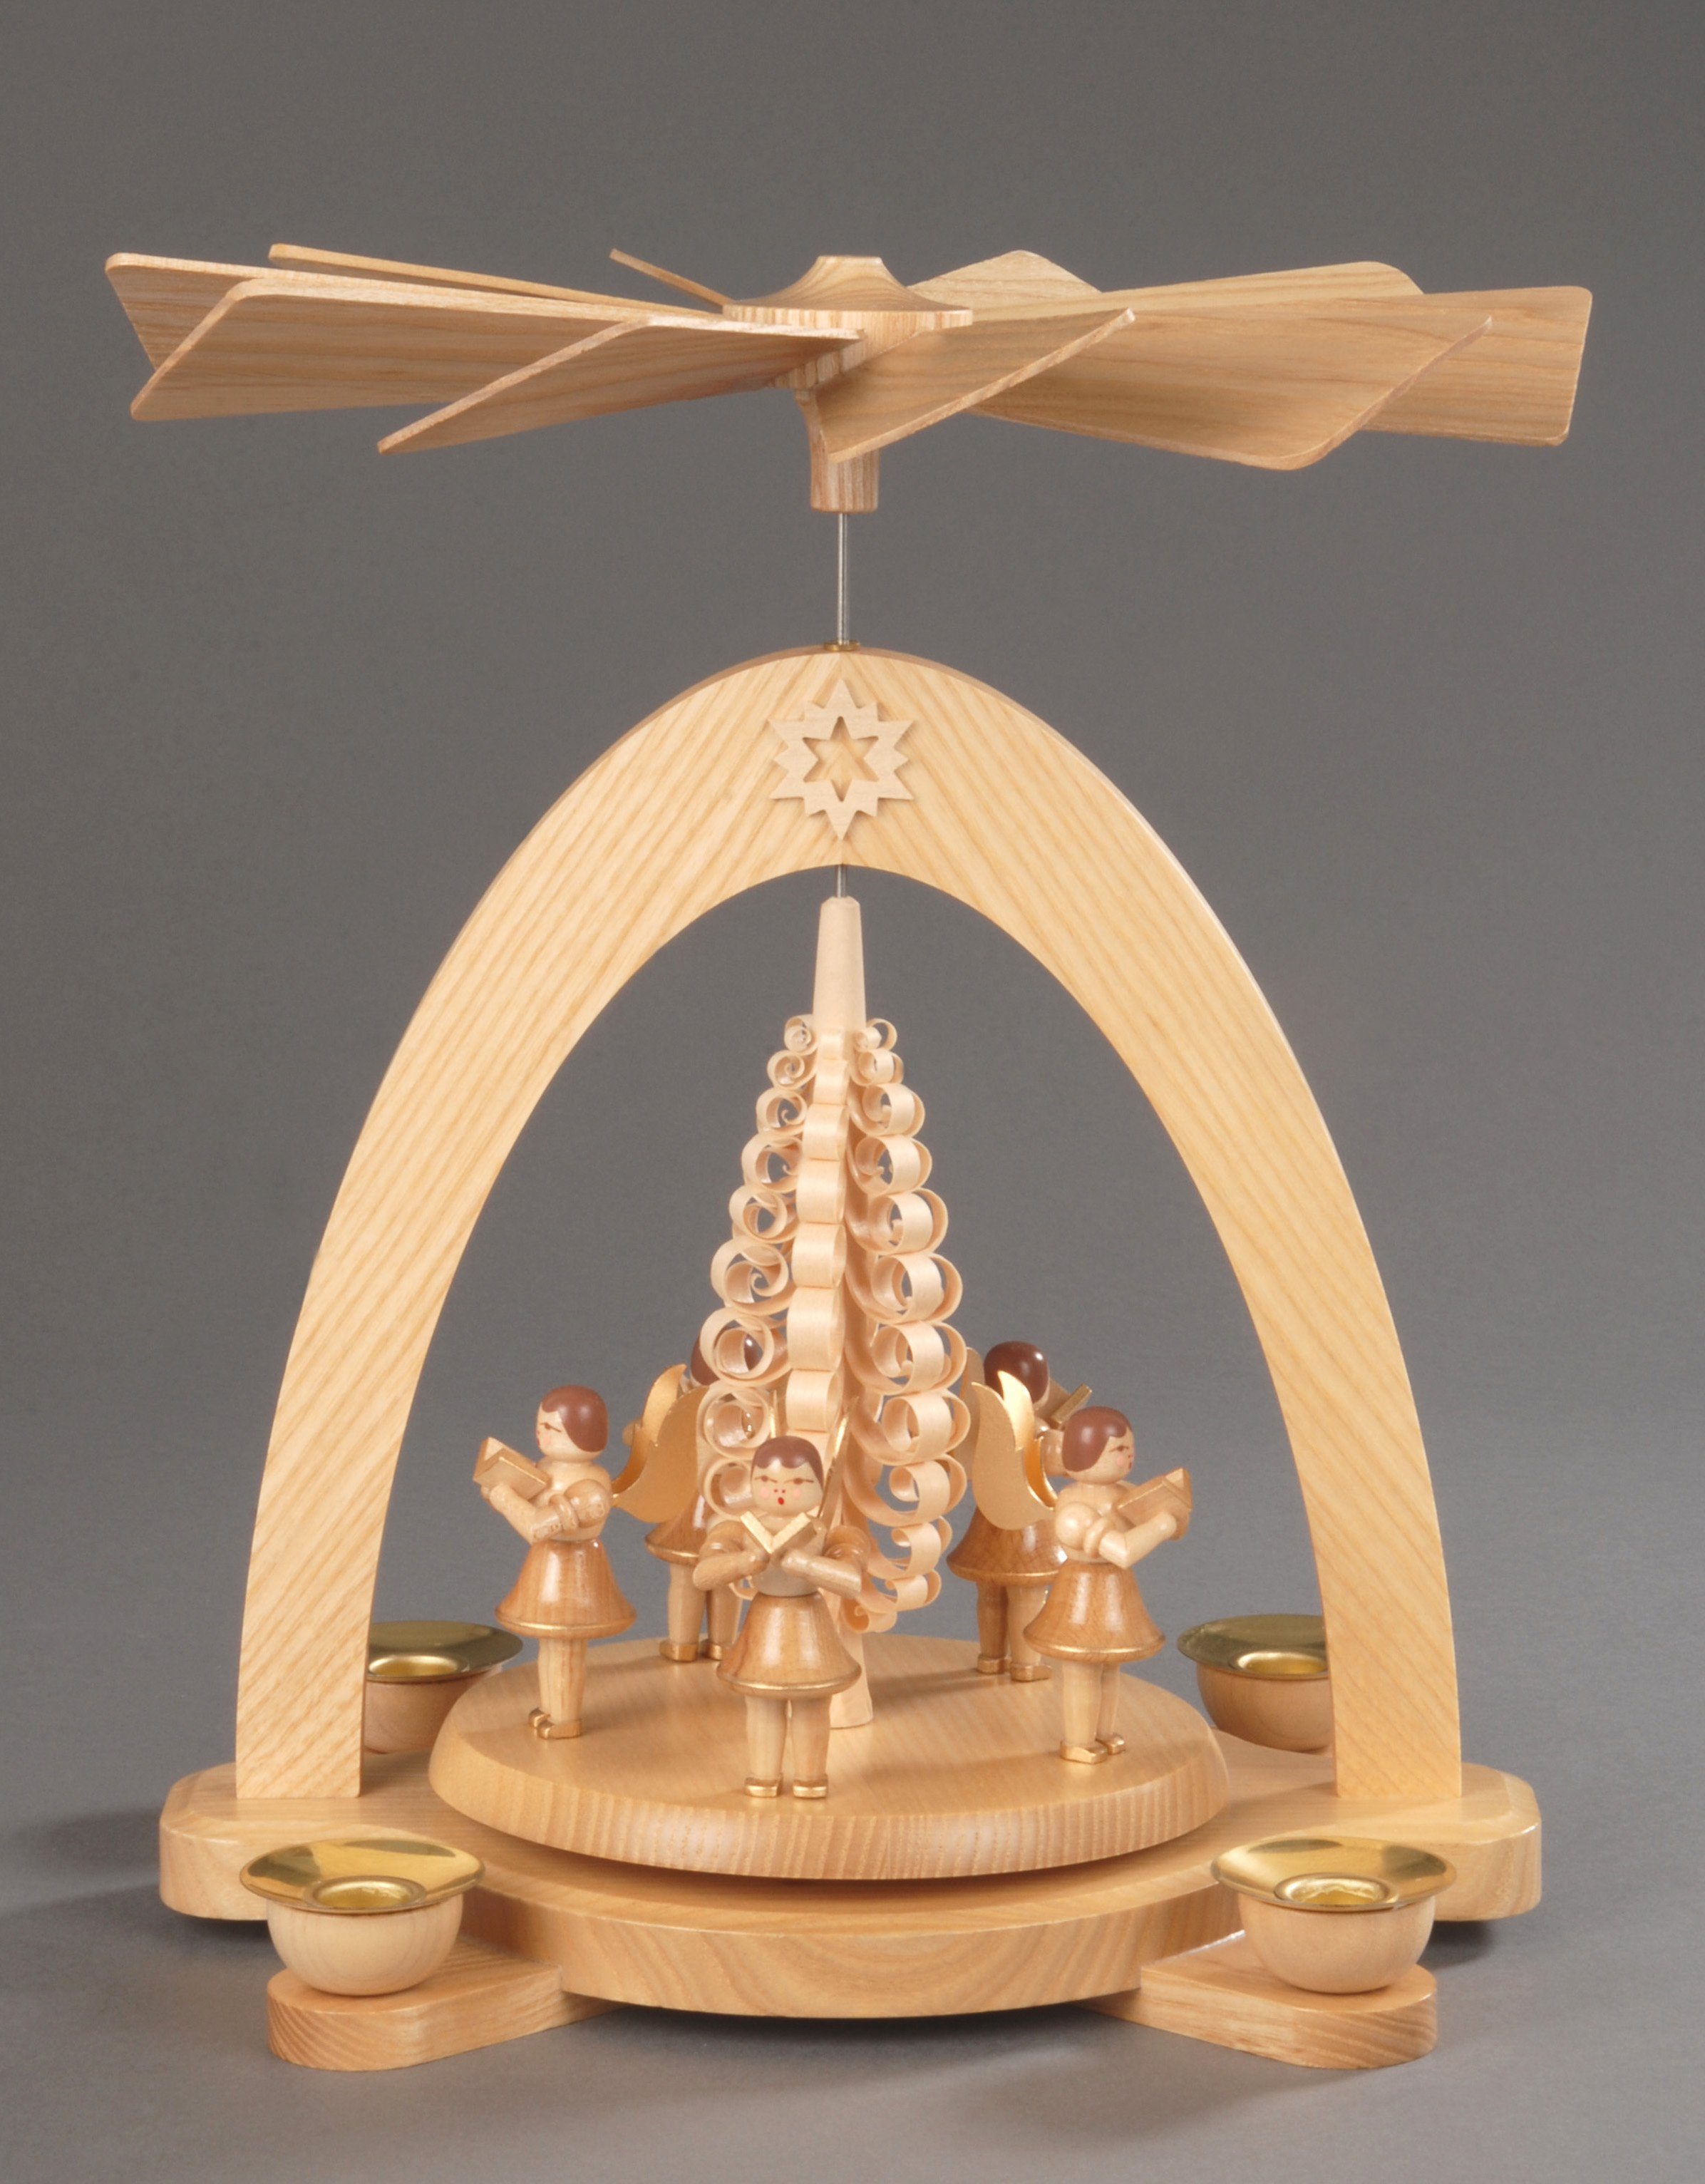 Weihnachtspyramide mit Spanbaum, aus Albin Handwerkskunst Preissler 5 dem Weihnachtsdeko, Engel Erzgebirge